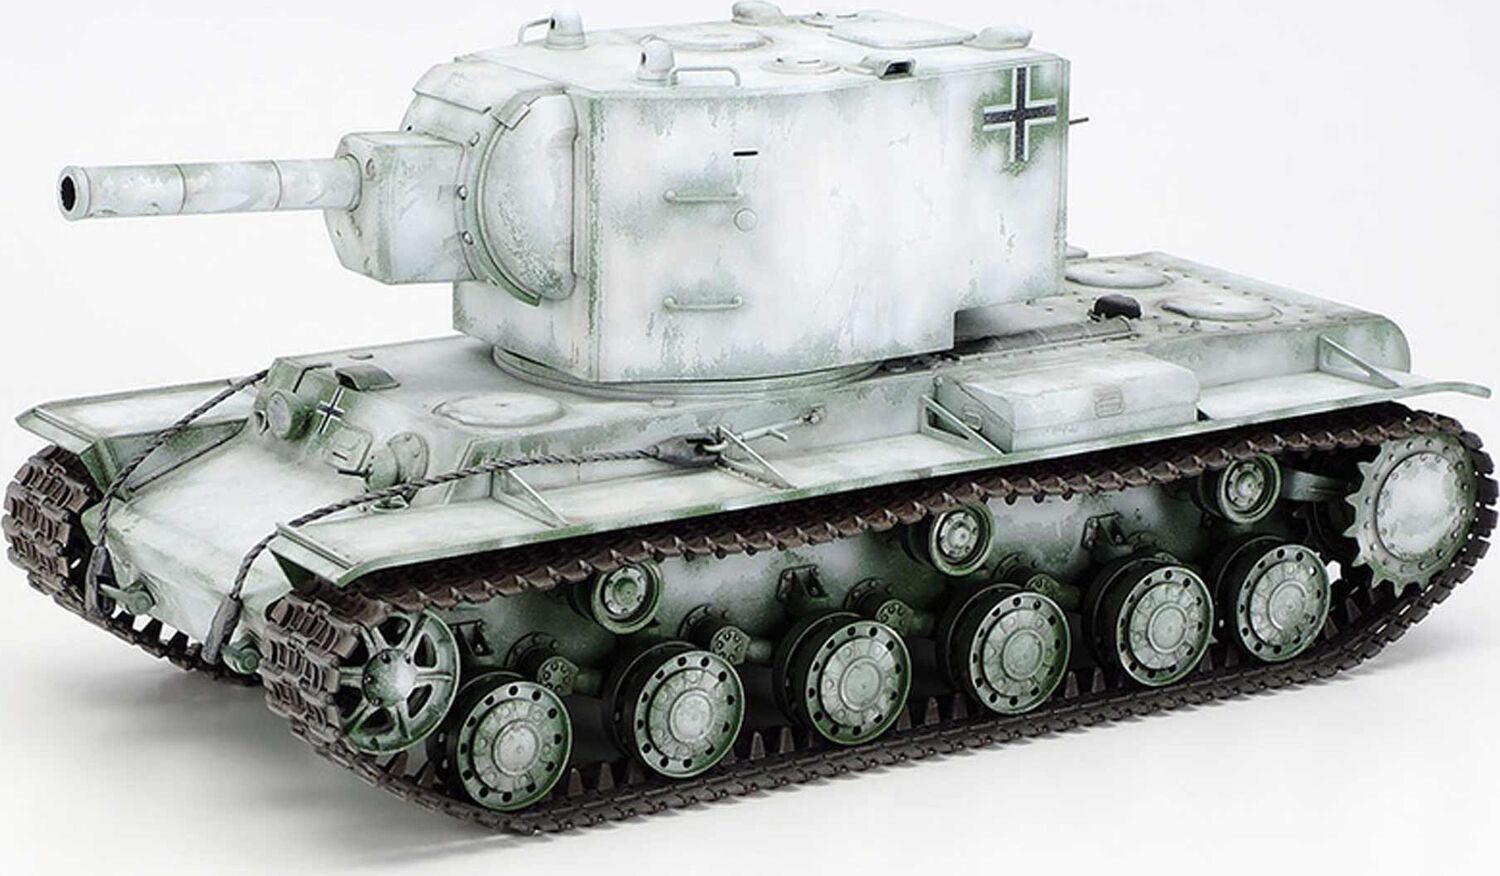 Tamiya 1:35 Russian Heavy Tank KV-1 Model 1941 Early Production